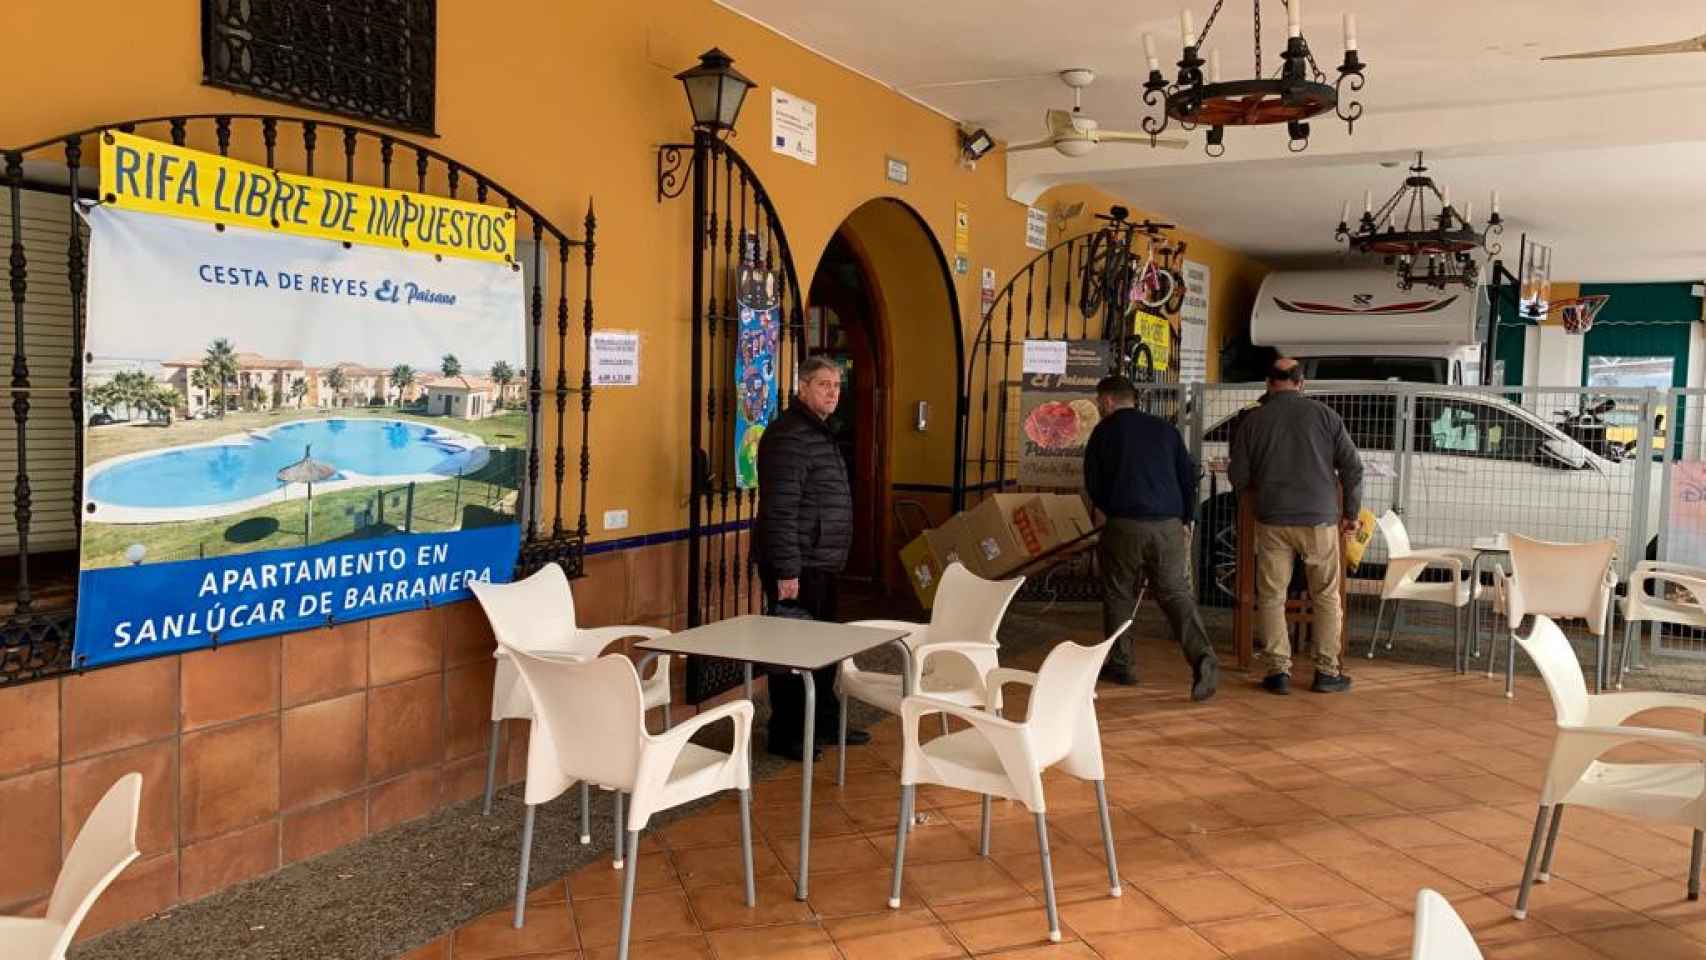 La puerta del Restaurante Asador El Paisano detalla que la cesta es libre de impuestos.